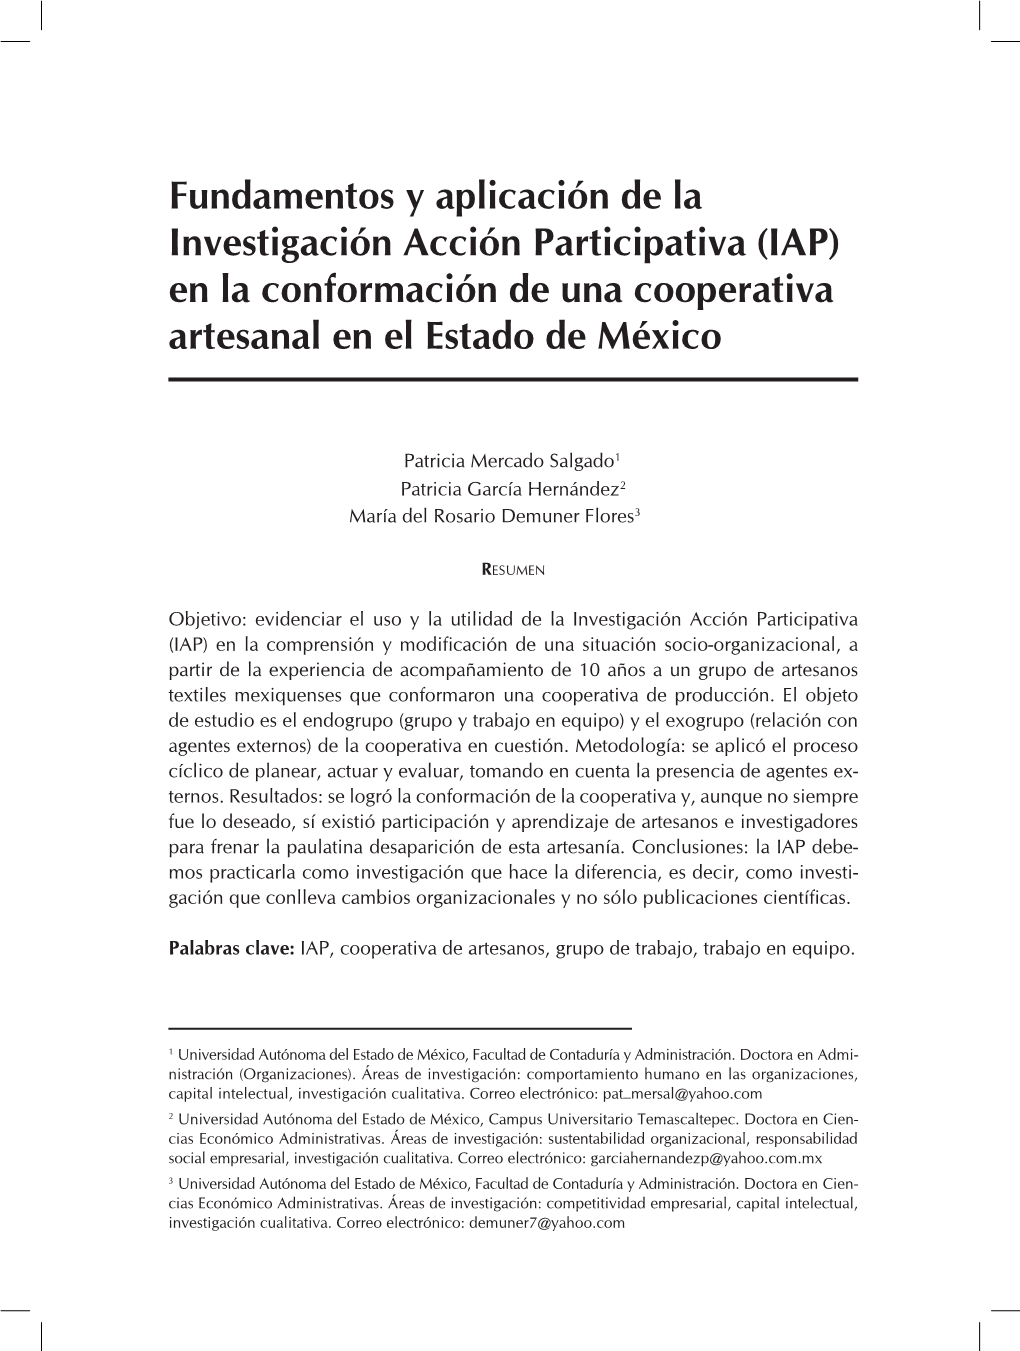 Fundamentos Y Aplicación De La Investigación Acción Participativa (Iap) En La Conformación De Una